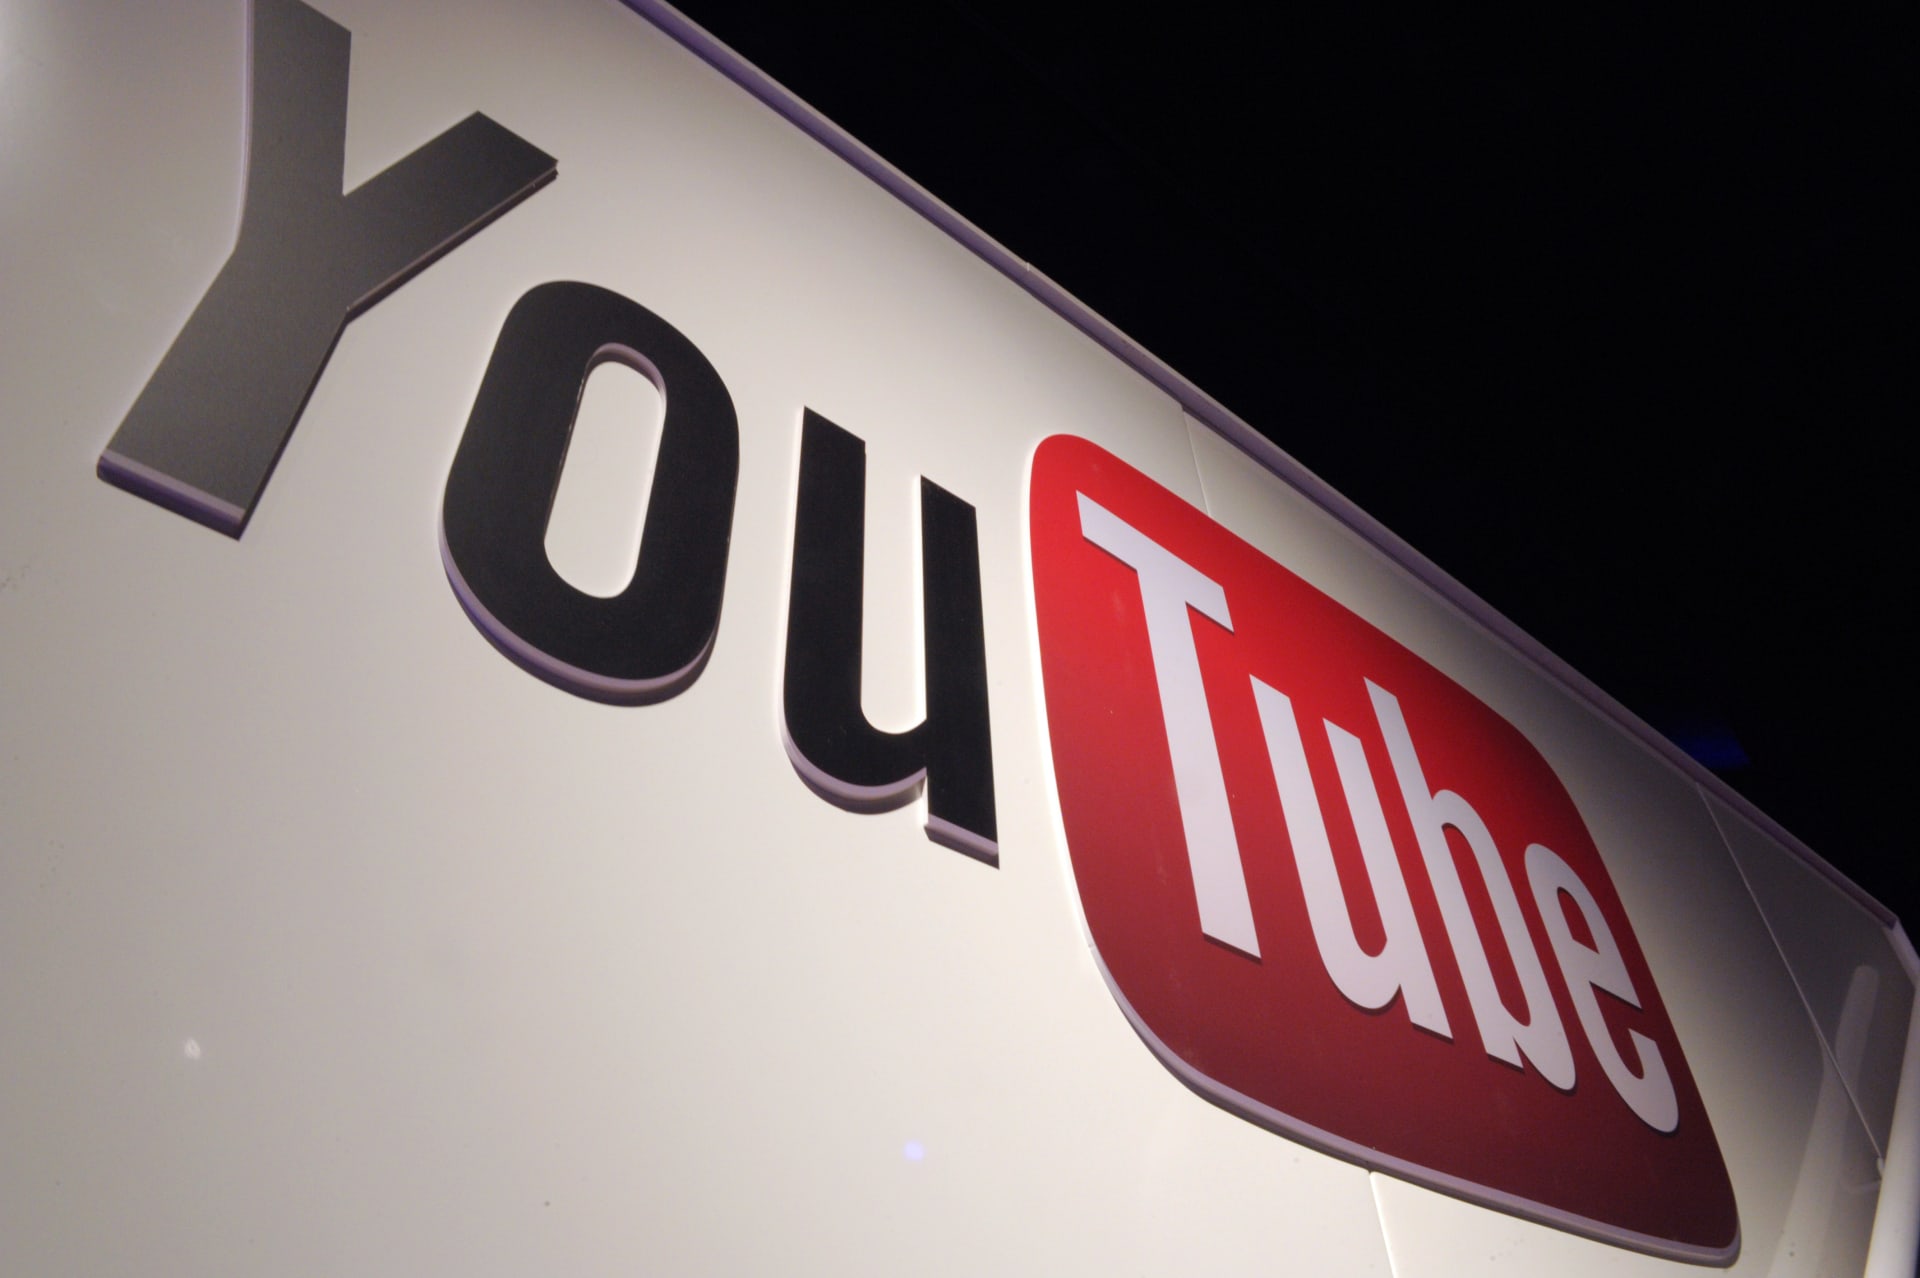 يوتيوب يعلن إزالة 100 ألف فيديو.. و500 مليون تعليق يحتوي خطابات كراهية 